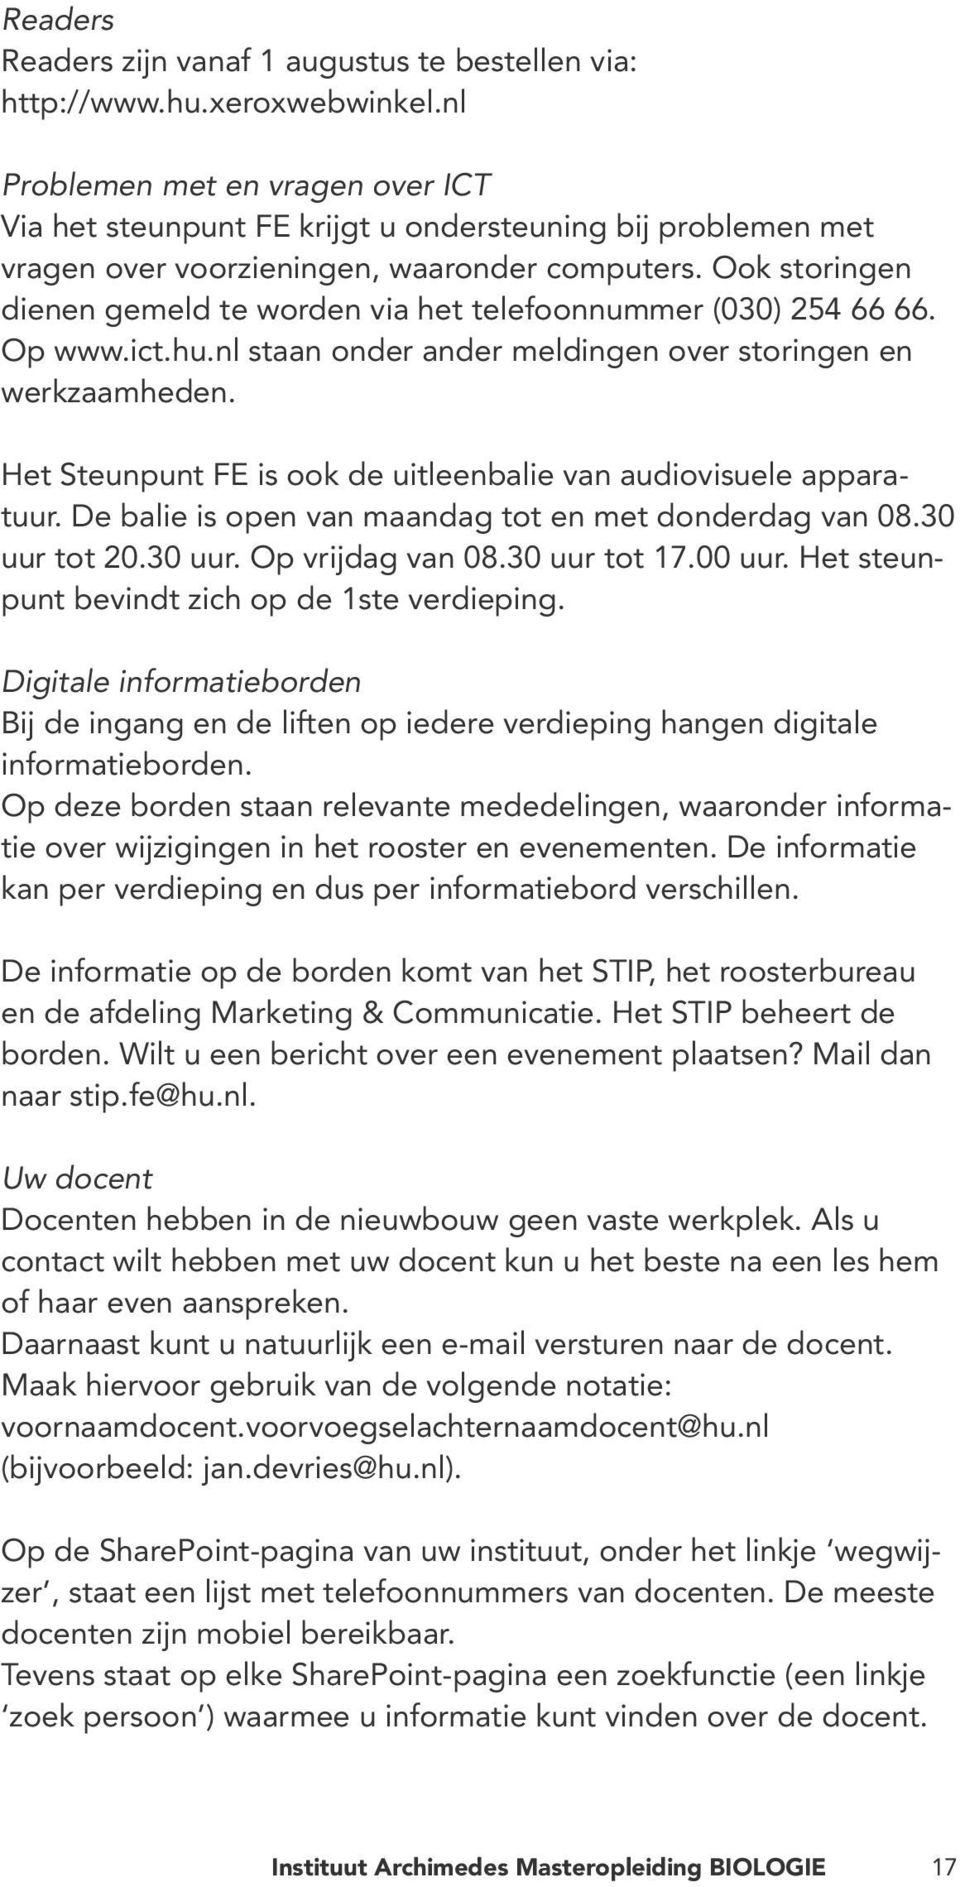 Ook storingen dienen gemeld te worden via het telefoonnummer (030) 254 66 66. Op www.ict.hu.nl staan onder ander meldingen over storingen en werkzaamheden.